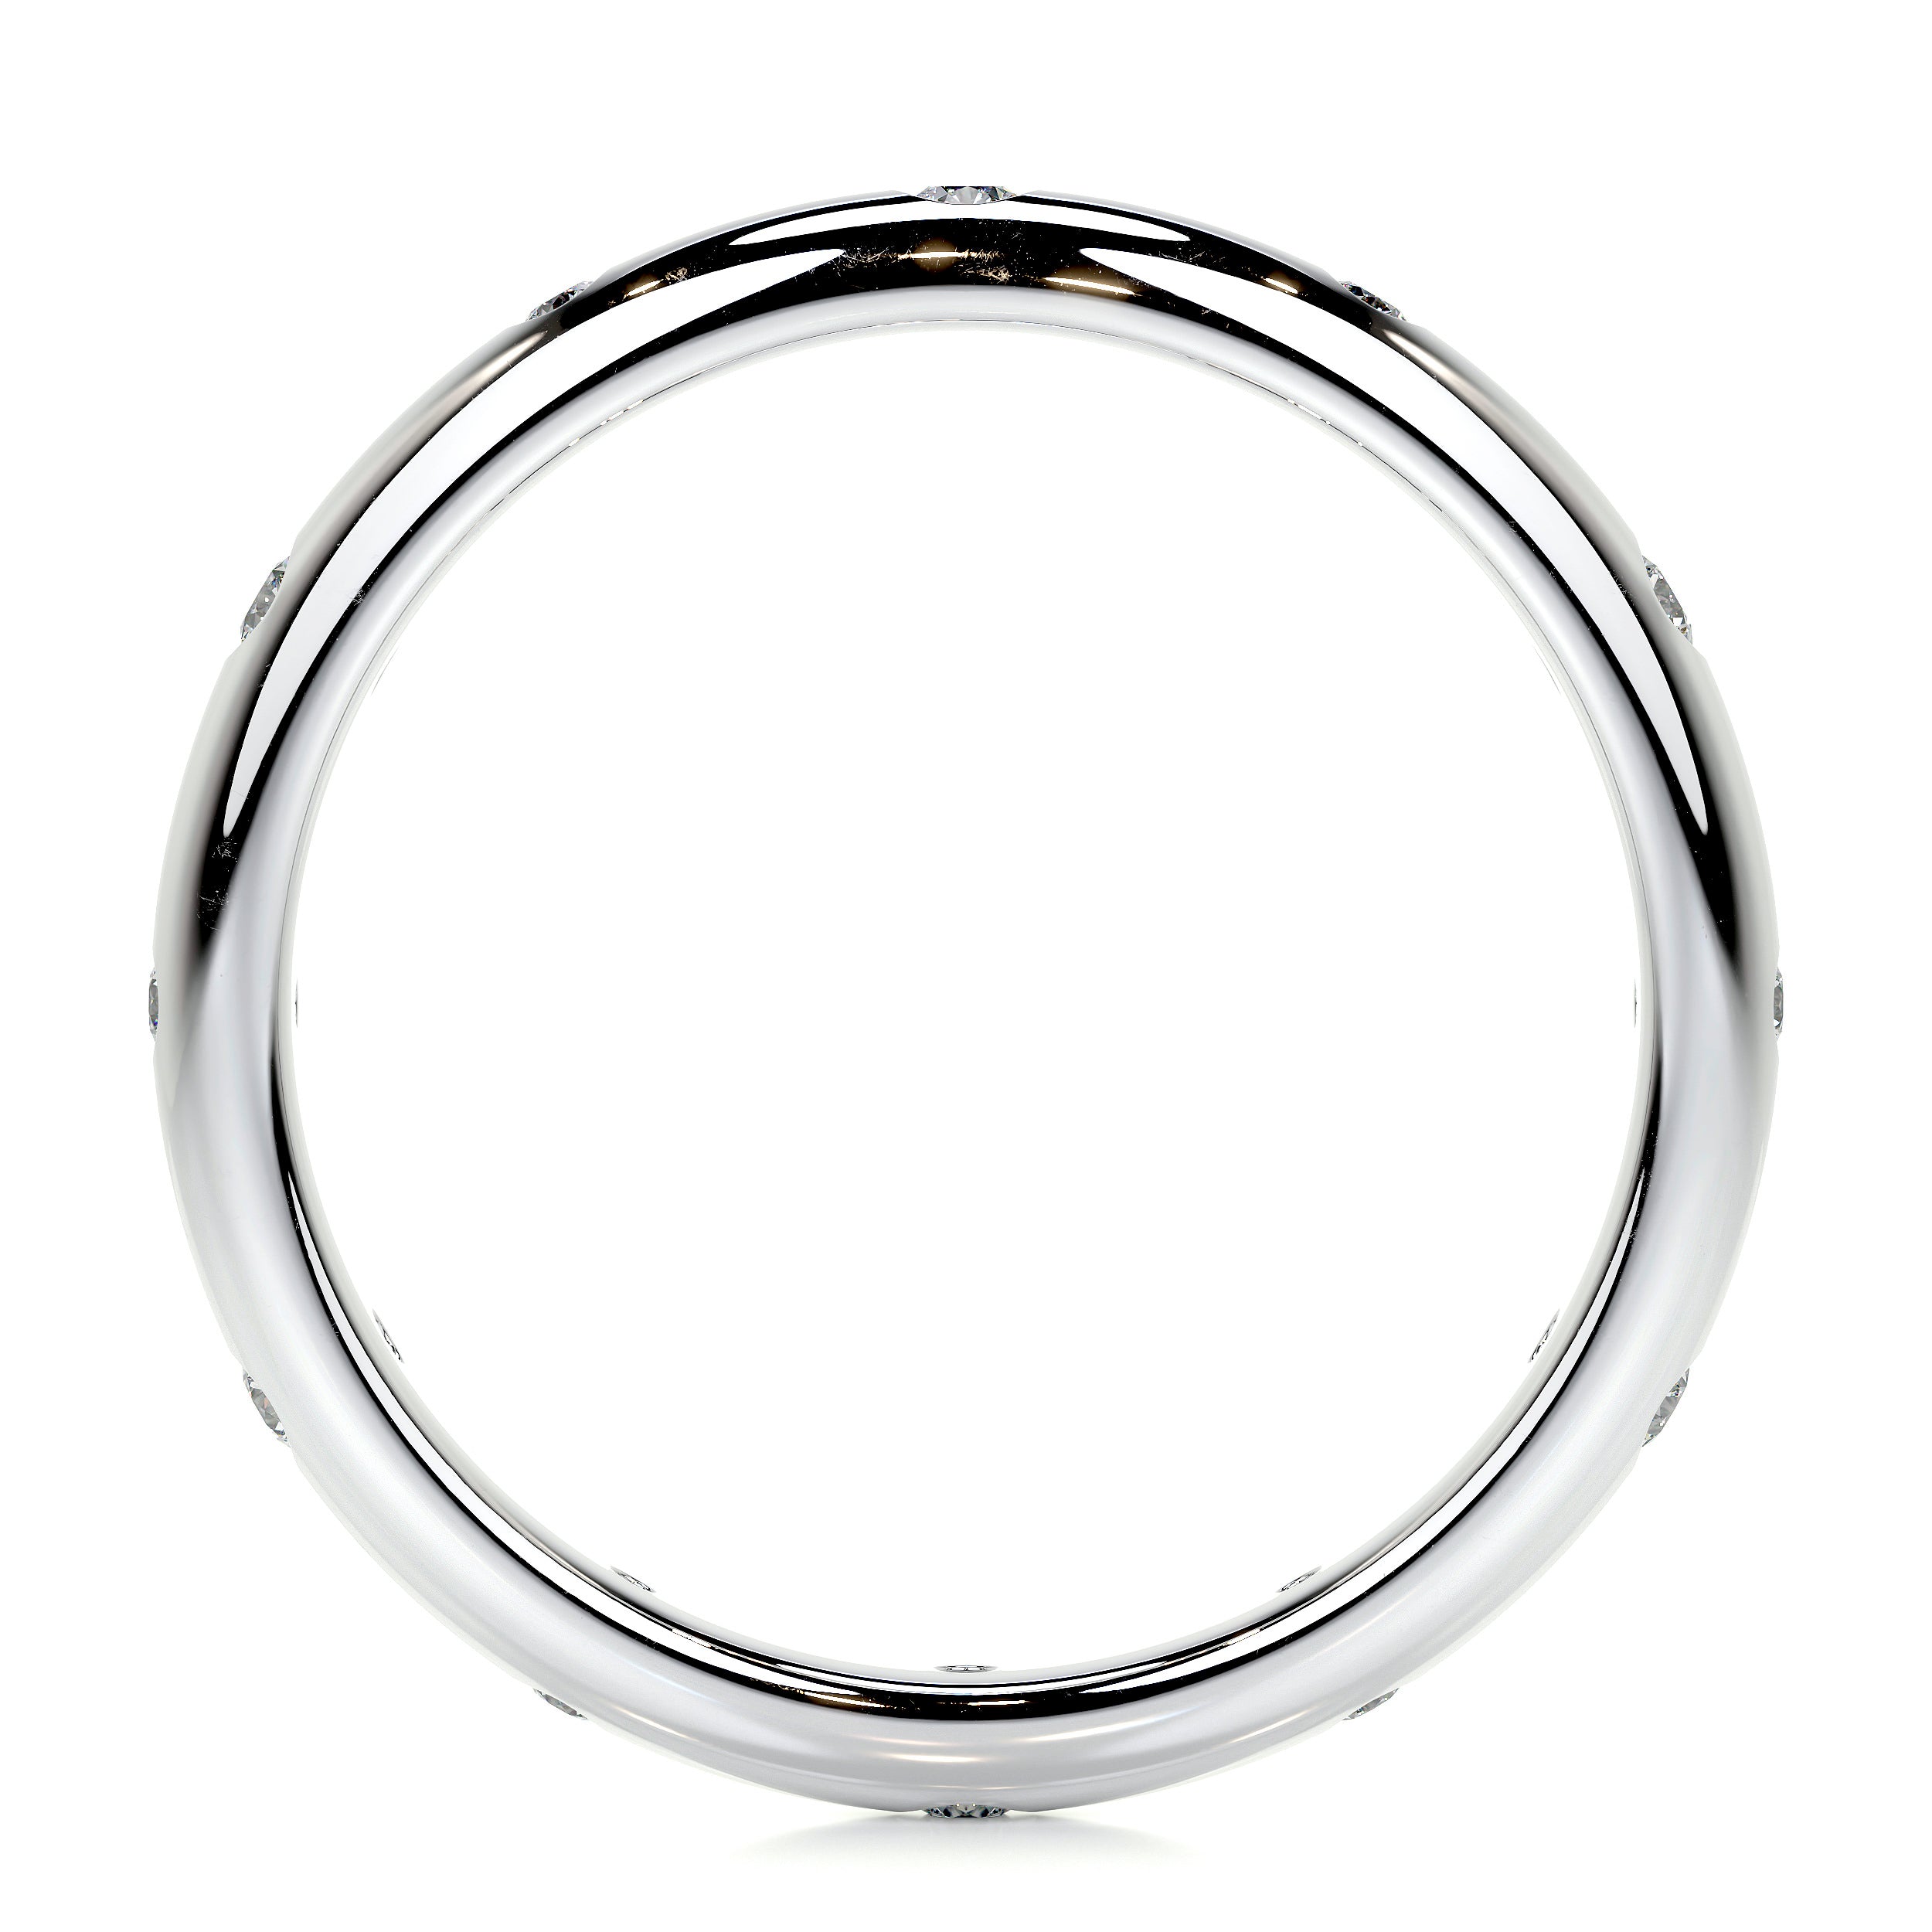 Zara Lab Grown Diamond Wedding Ring   (0.18 Carat) -14K White Gold